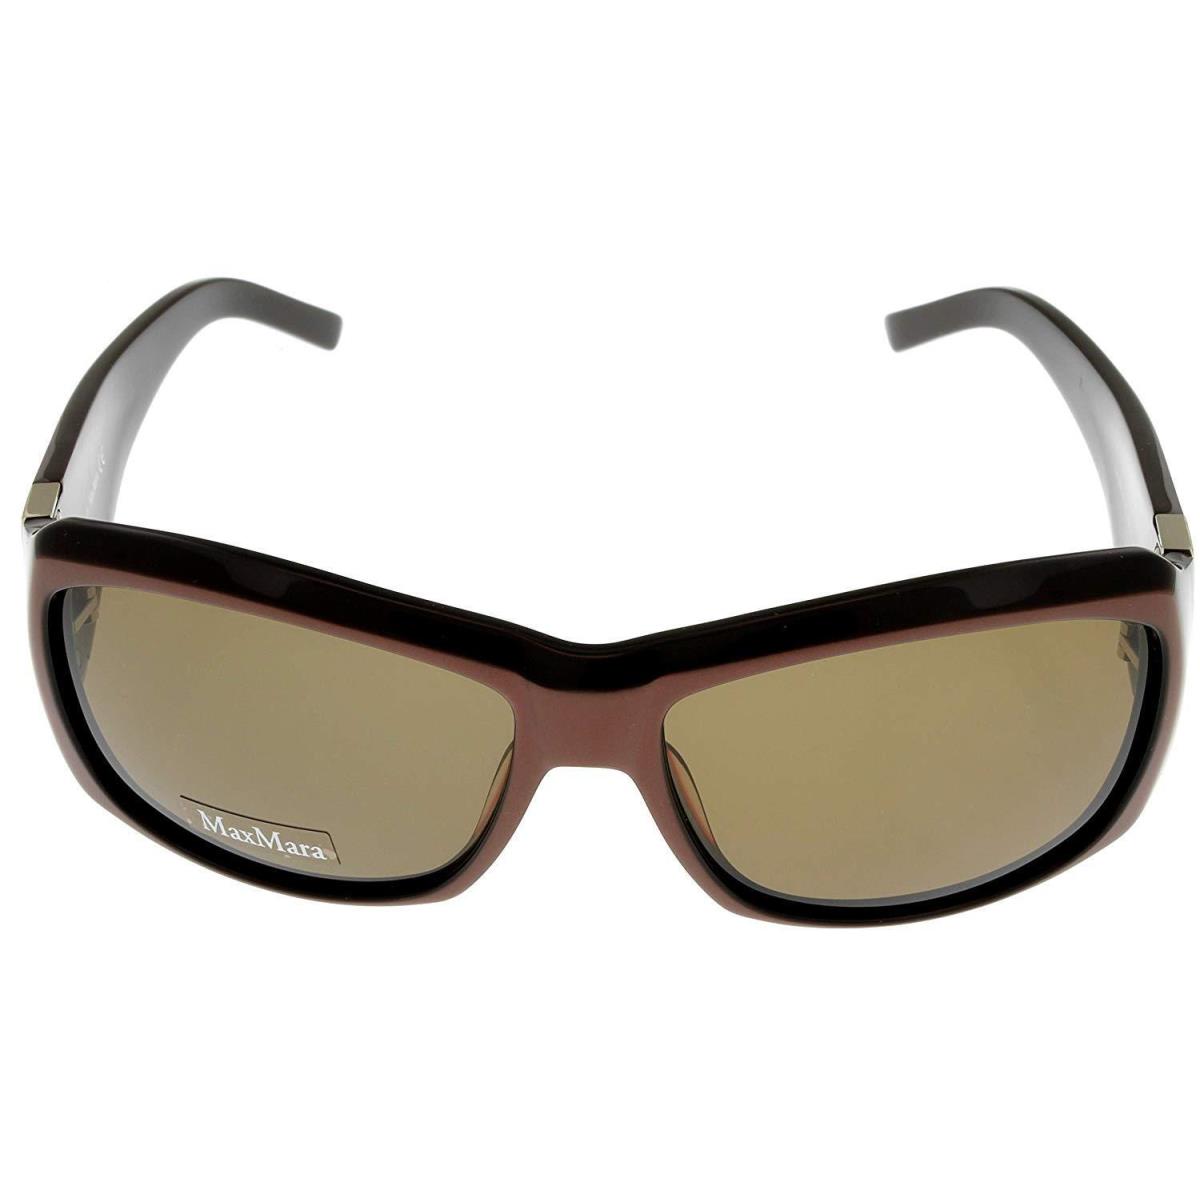 Max Mara Sunglasses Women Chocolate Brown Bronze Rectangular MM 845/S N3D 78